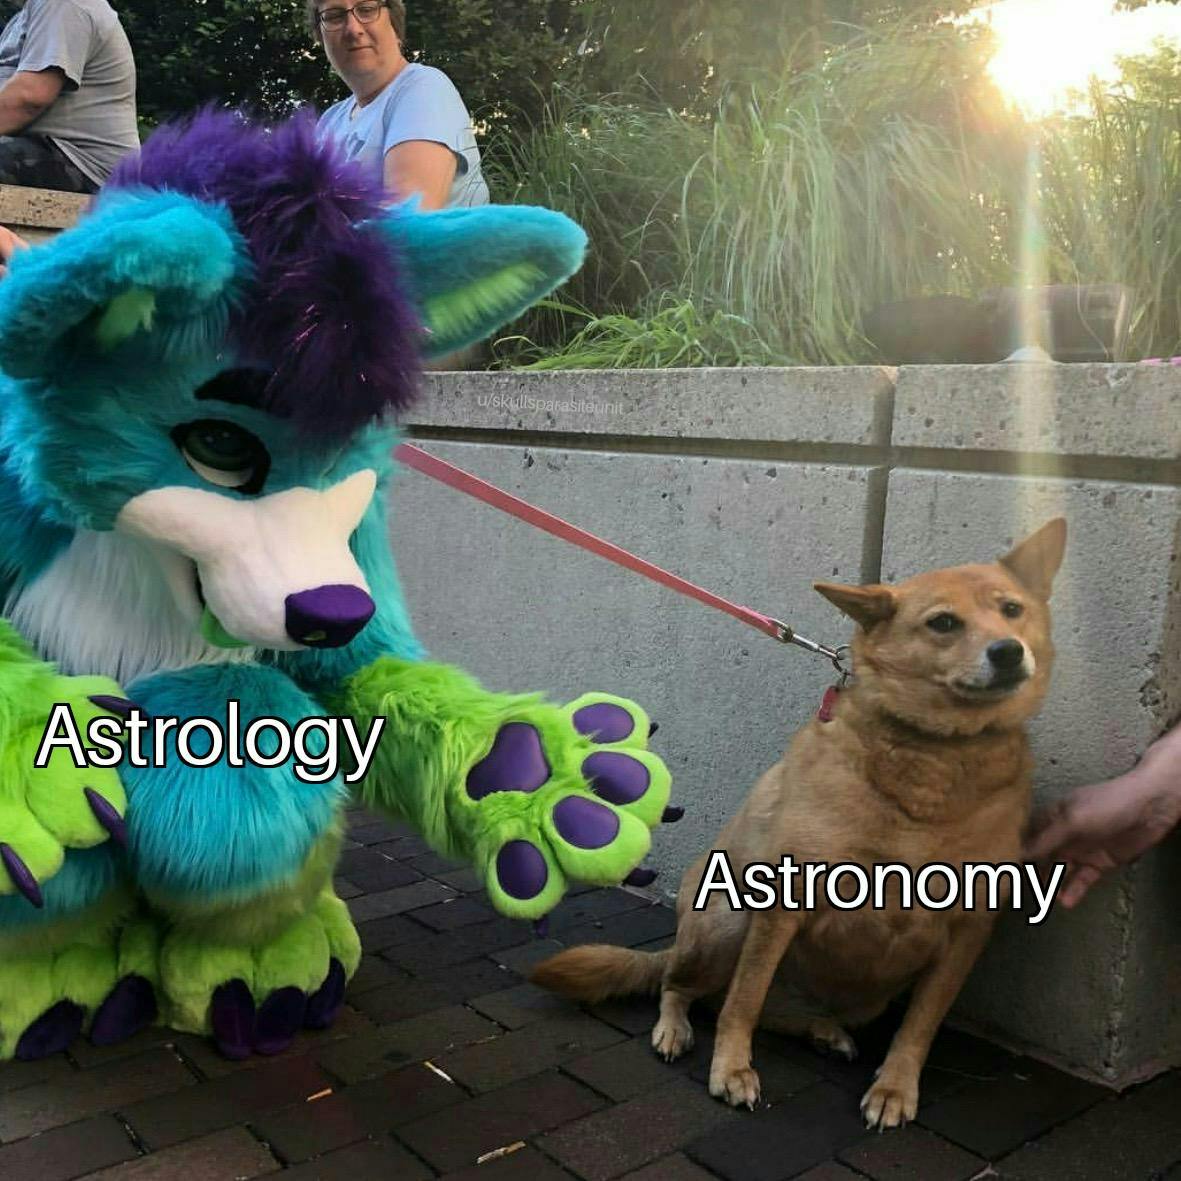 Astrología astronomía meme